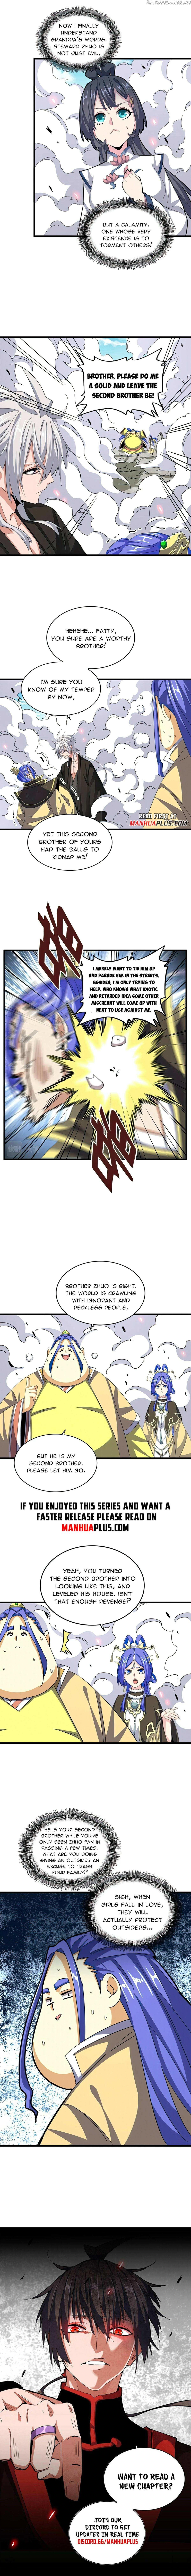 Magic Emperor Chapter 399 page 8 - Mangakakalot